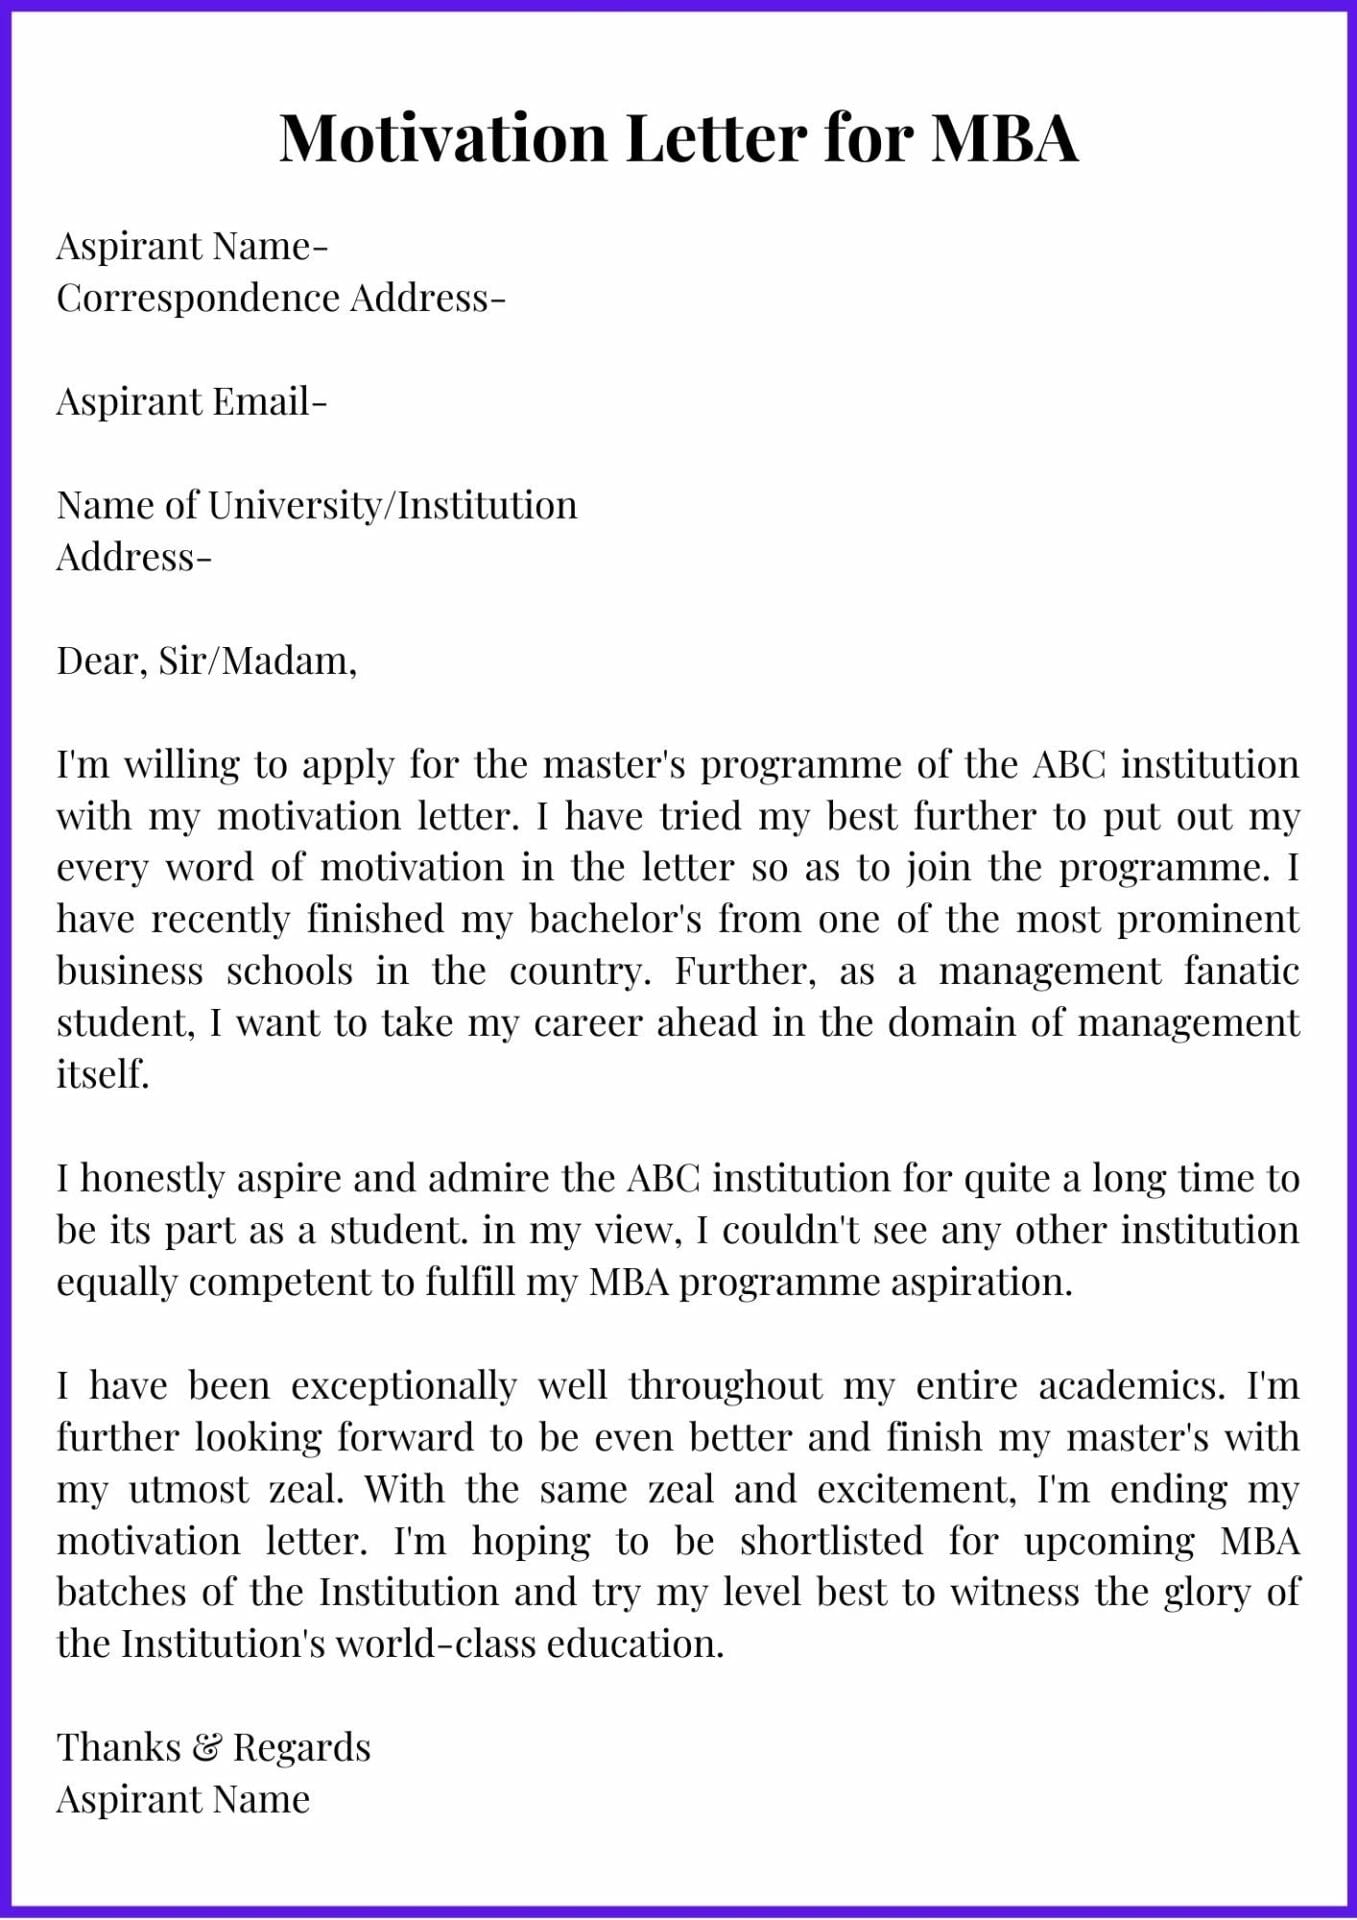 application letter for an mba program